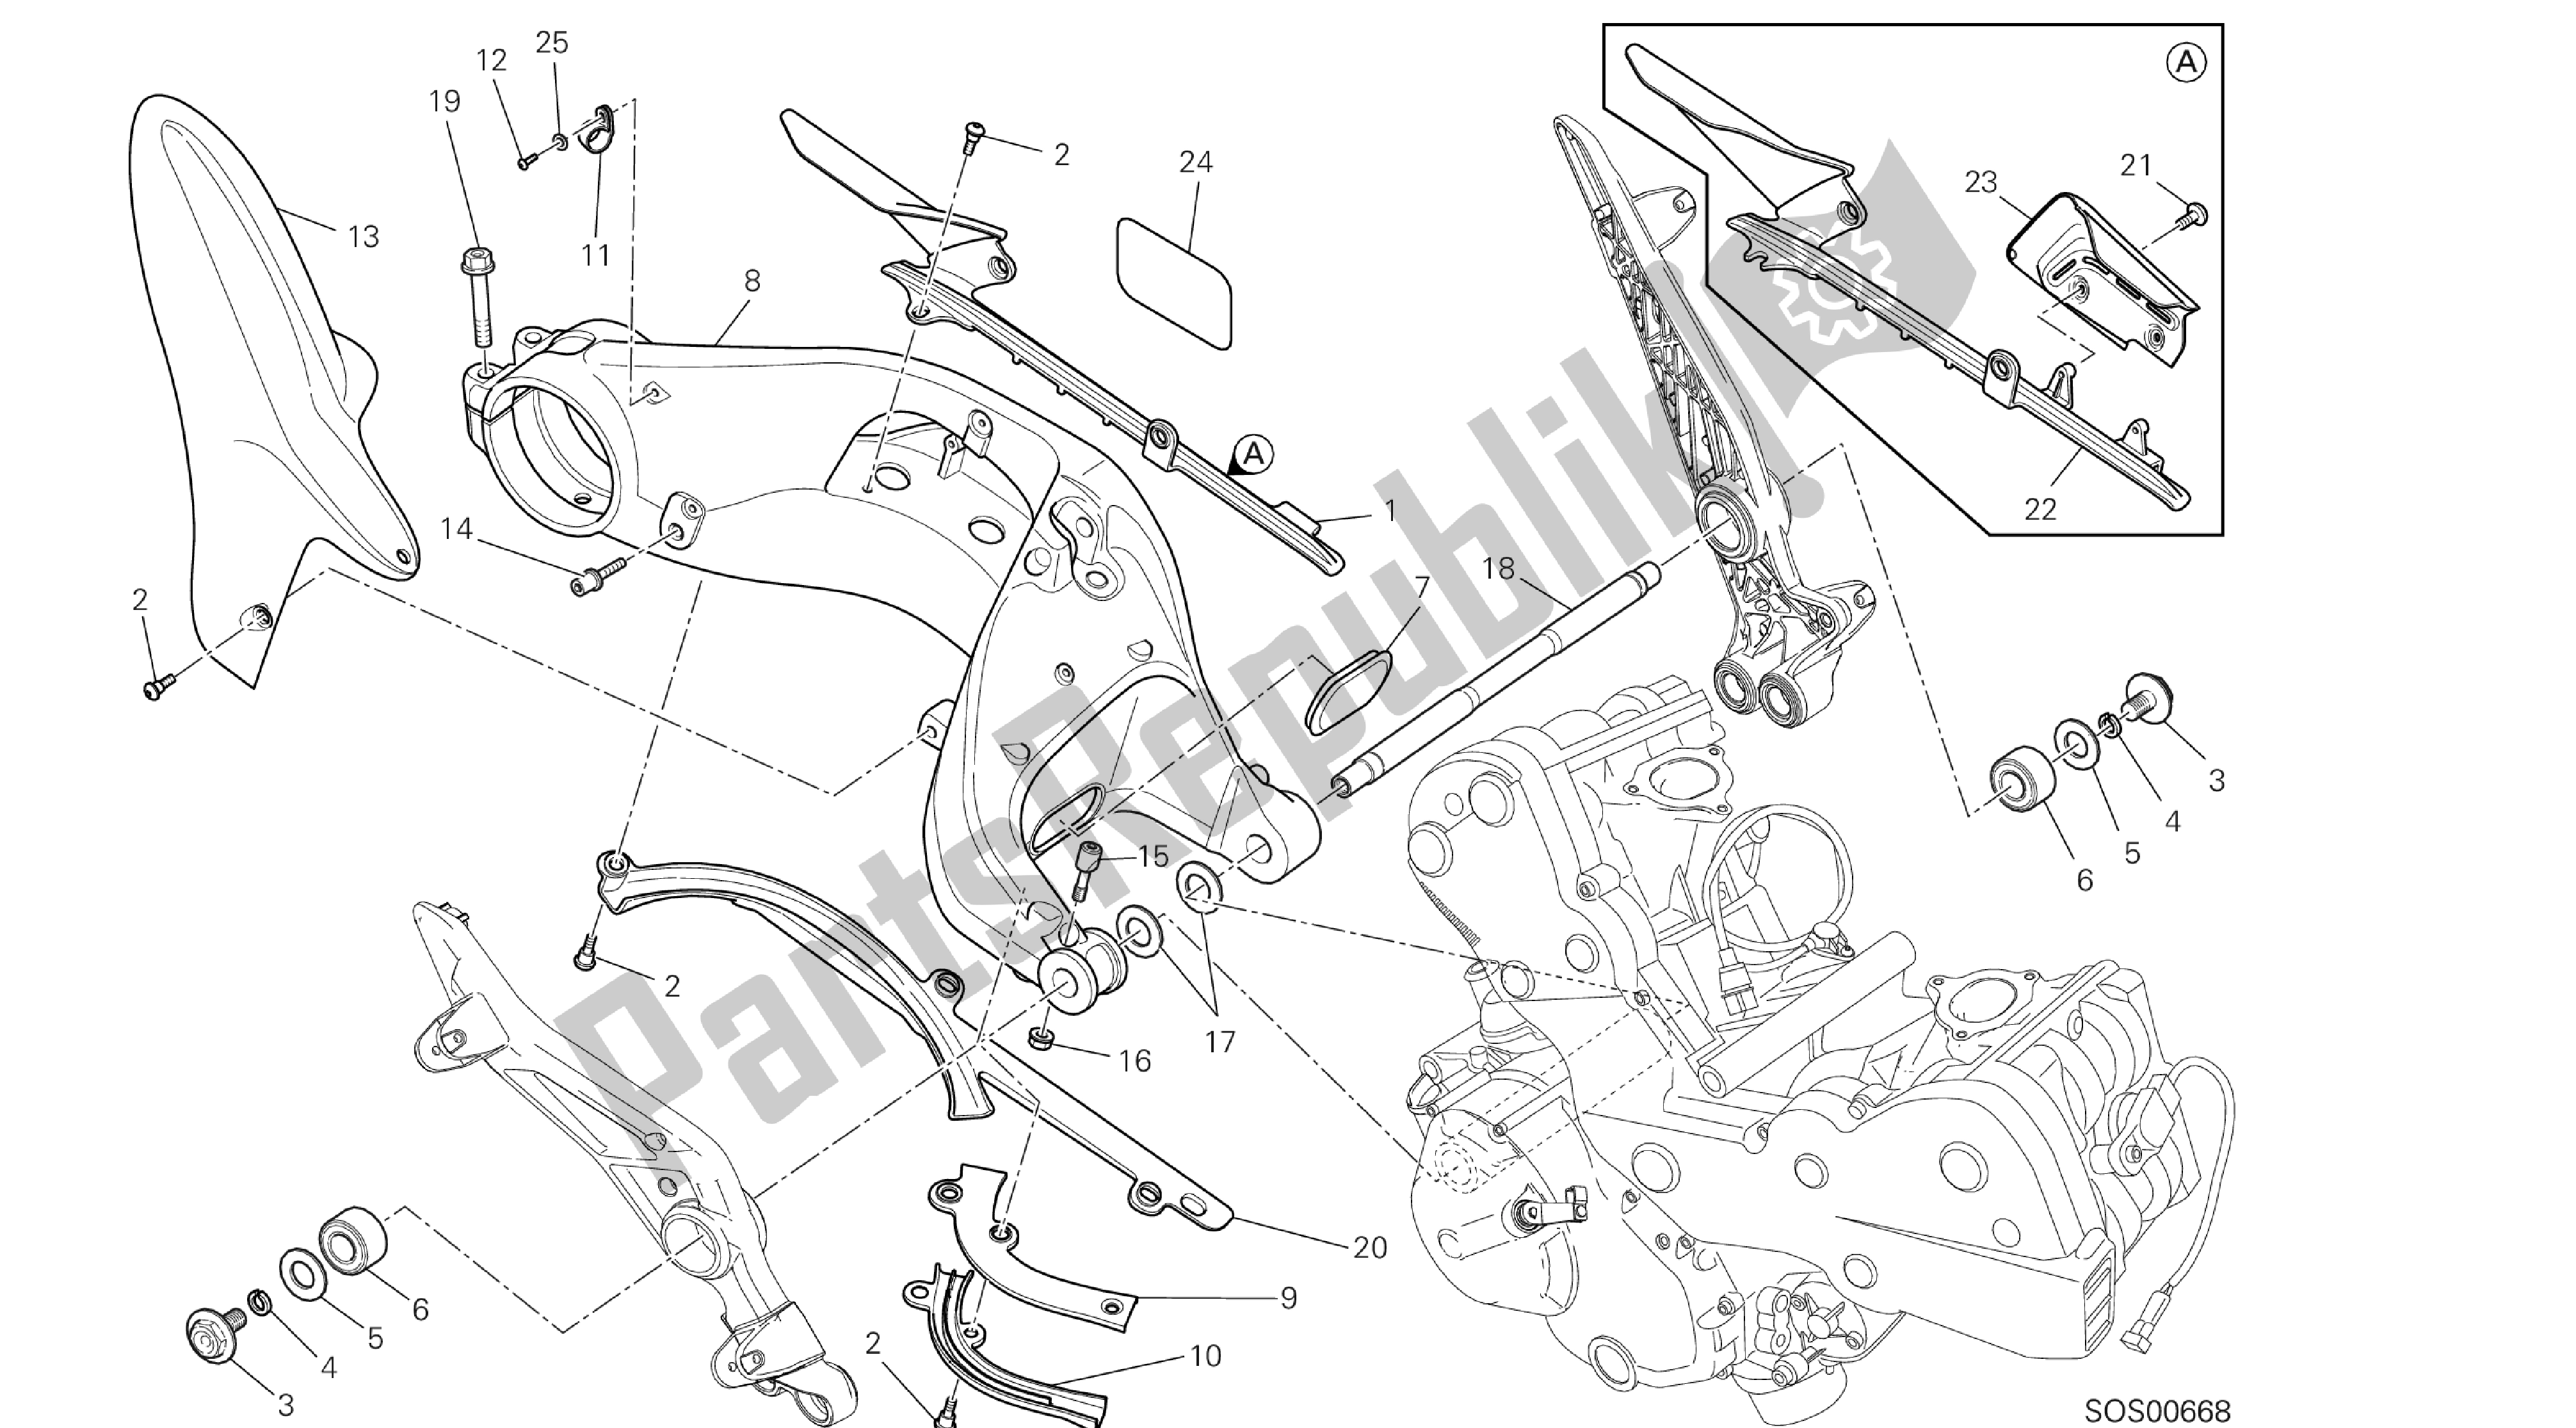 Todas las partes para Dibujo 28a - Forcellone Posteriore [x St: Cal, C Dn, Eur] Grupo Fr Ame de Ducati Hypermotard SP 821 2013